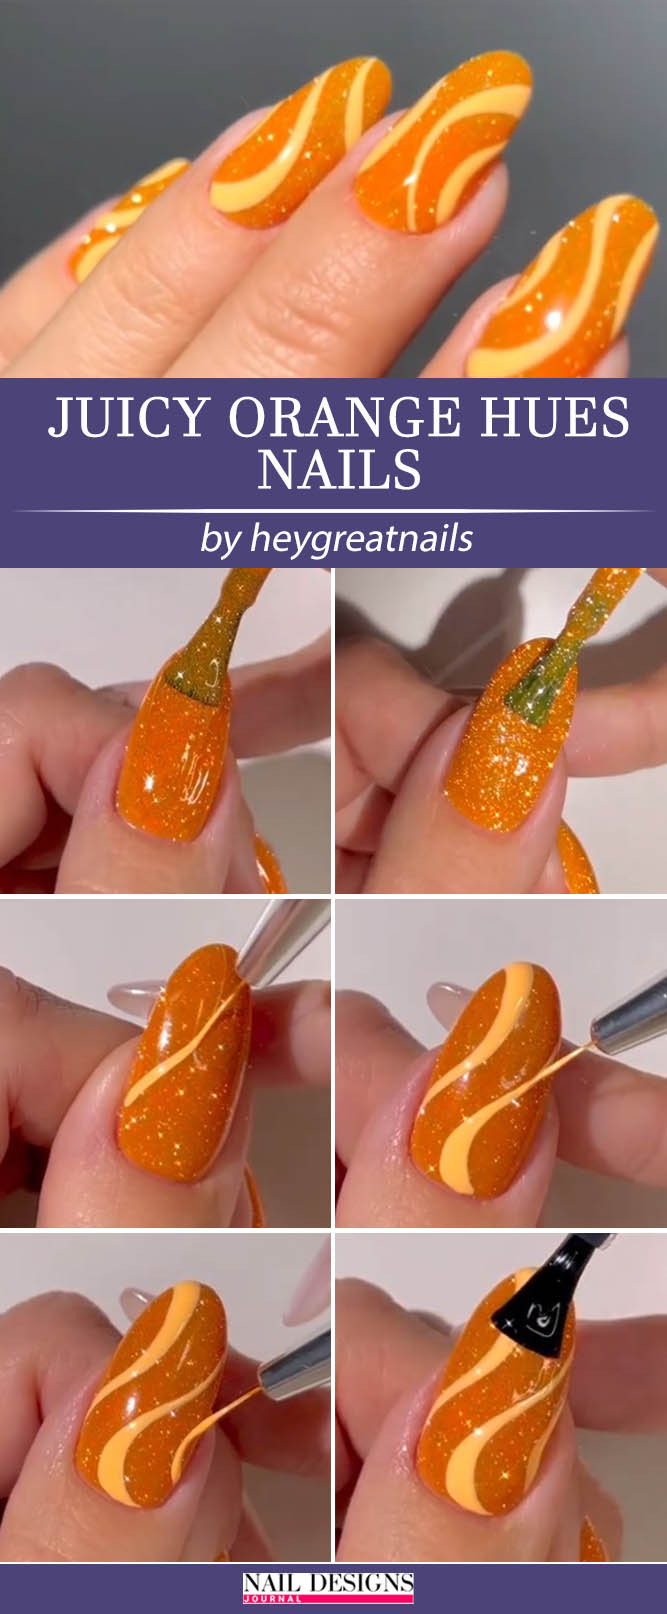 Juicy Orange Hues Nails